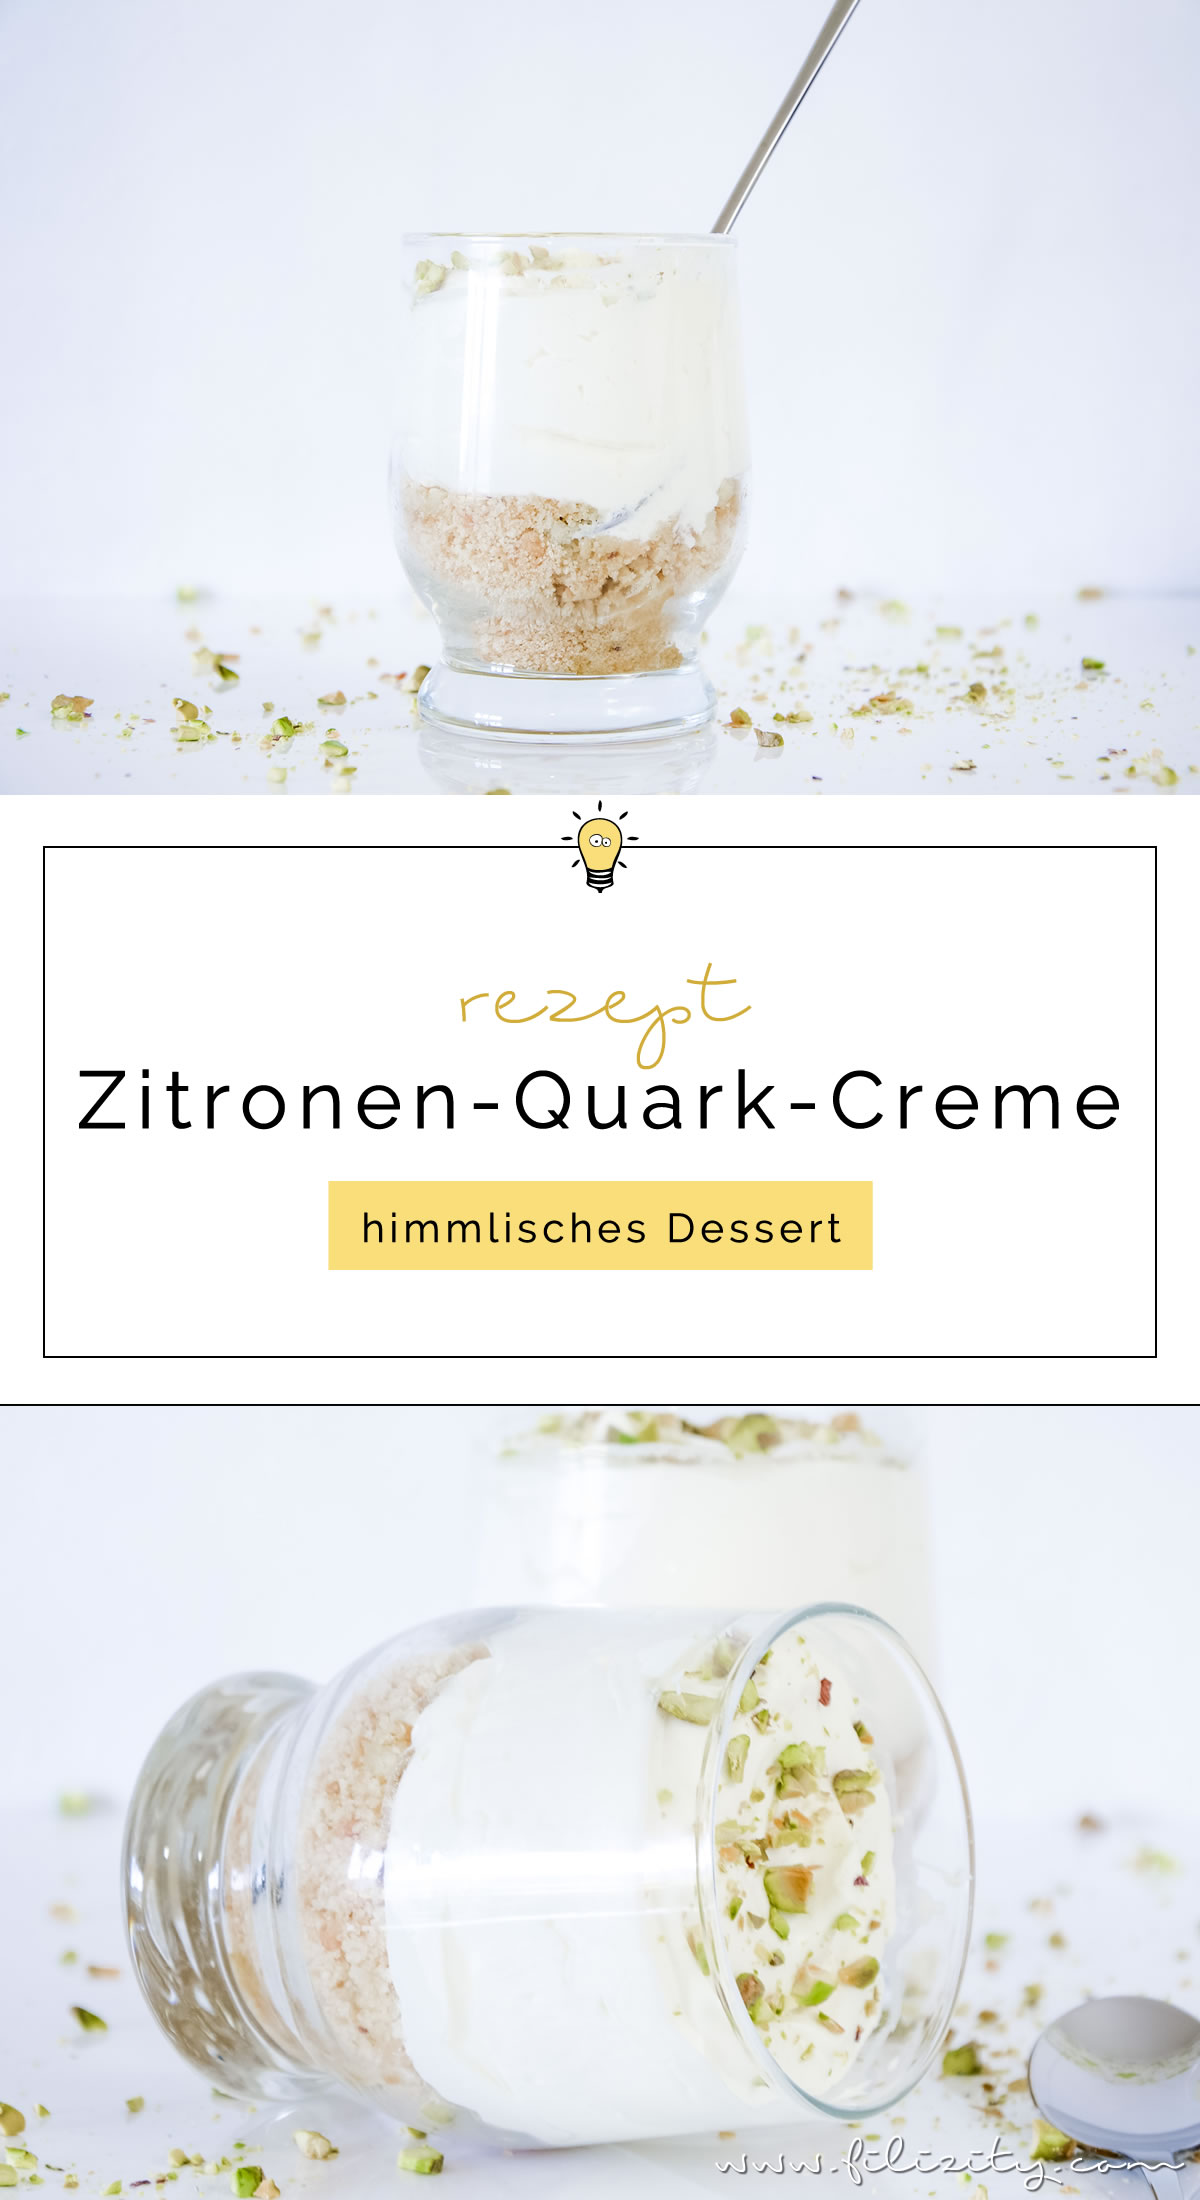 Feines Dessert: Zitronen-Quark-Creme mit Spritzgebäck | Leckere Nachspeise für Frühling und Sommer | Filizity.com | Food-Blog aus dem Rheinland #dessert #zitronen